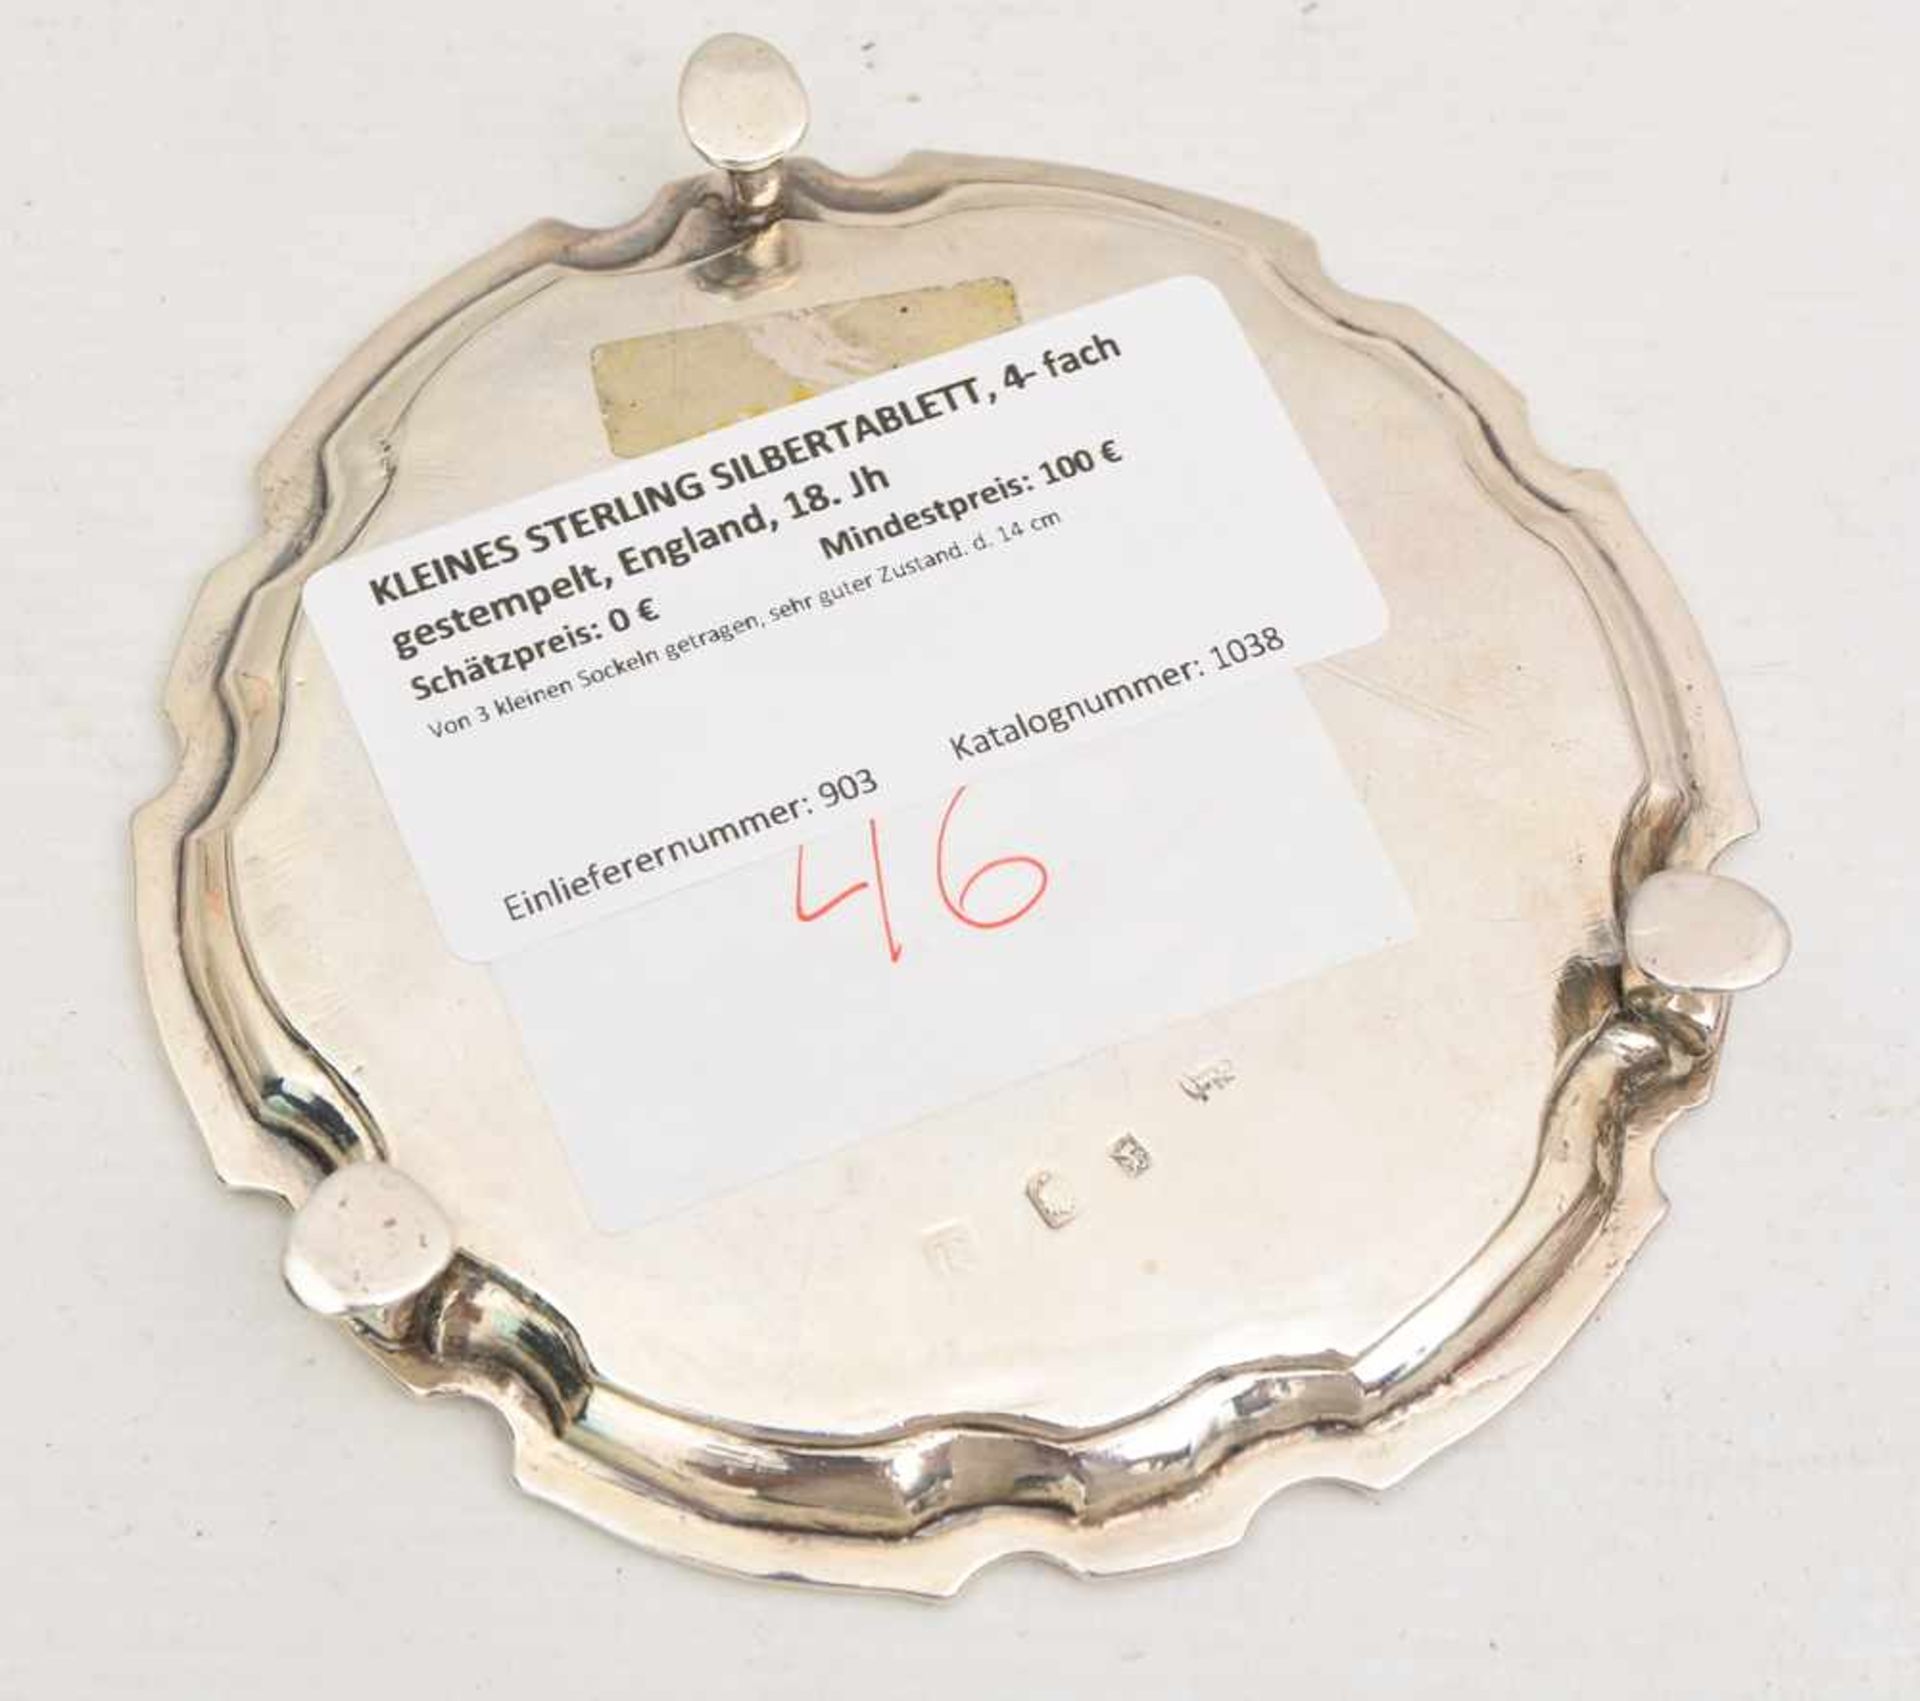 KLEINES STERLING SILBERTABLETT, 4- fach gestempelt, England, 18. Jh. 187g. Von 3 kleinen Sockeln - Bild 2 aus 5